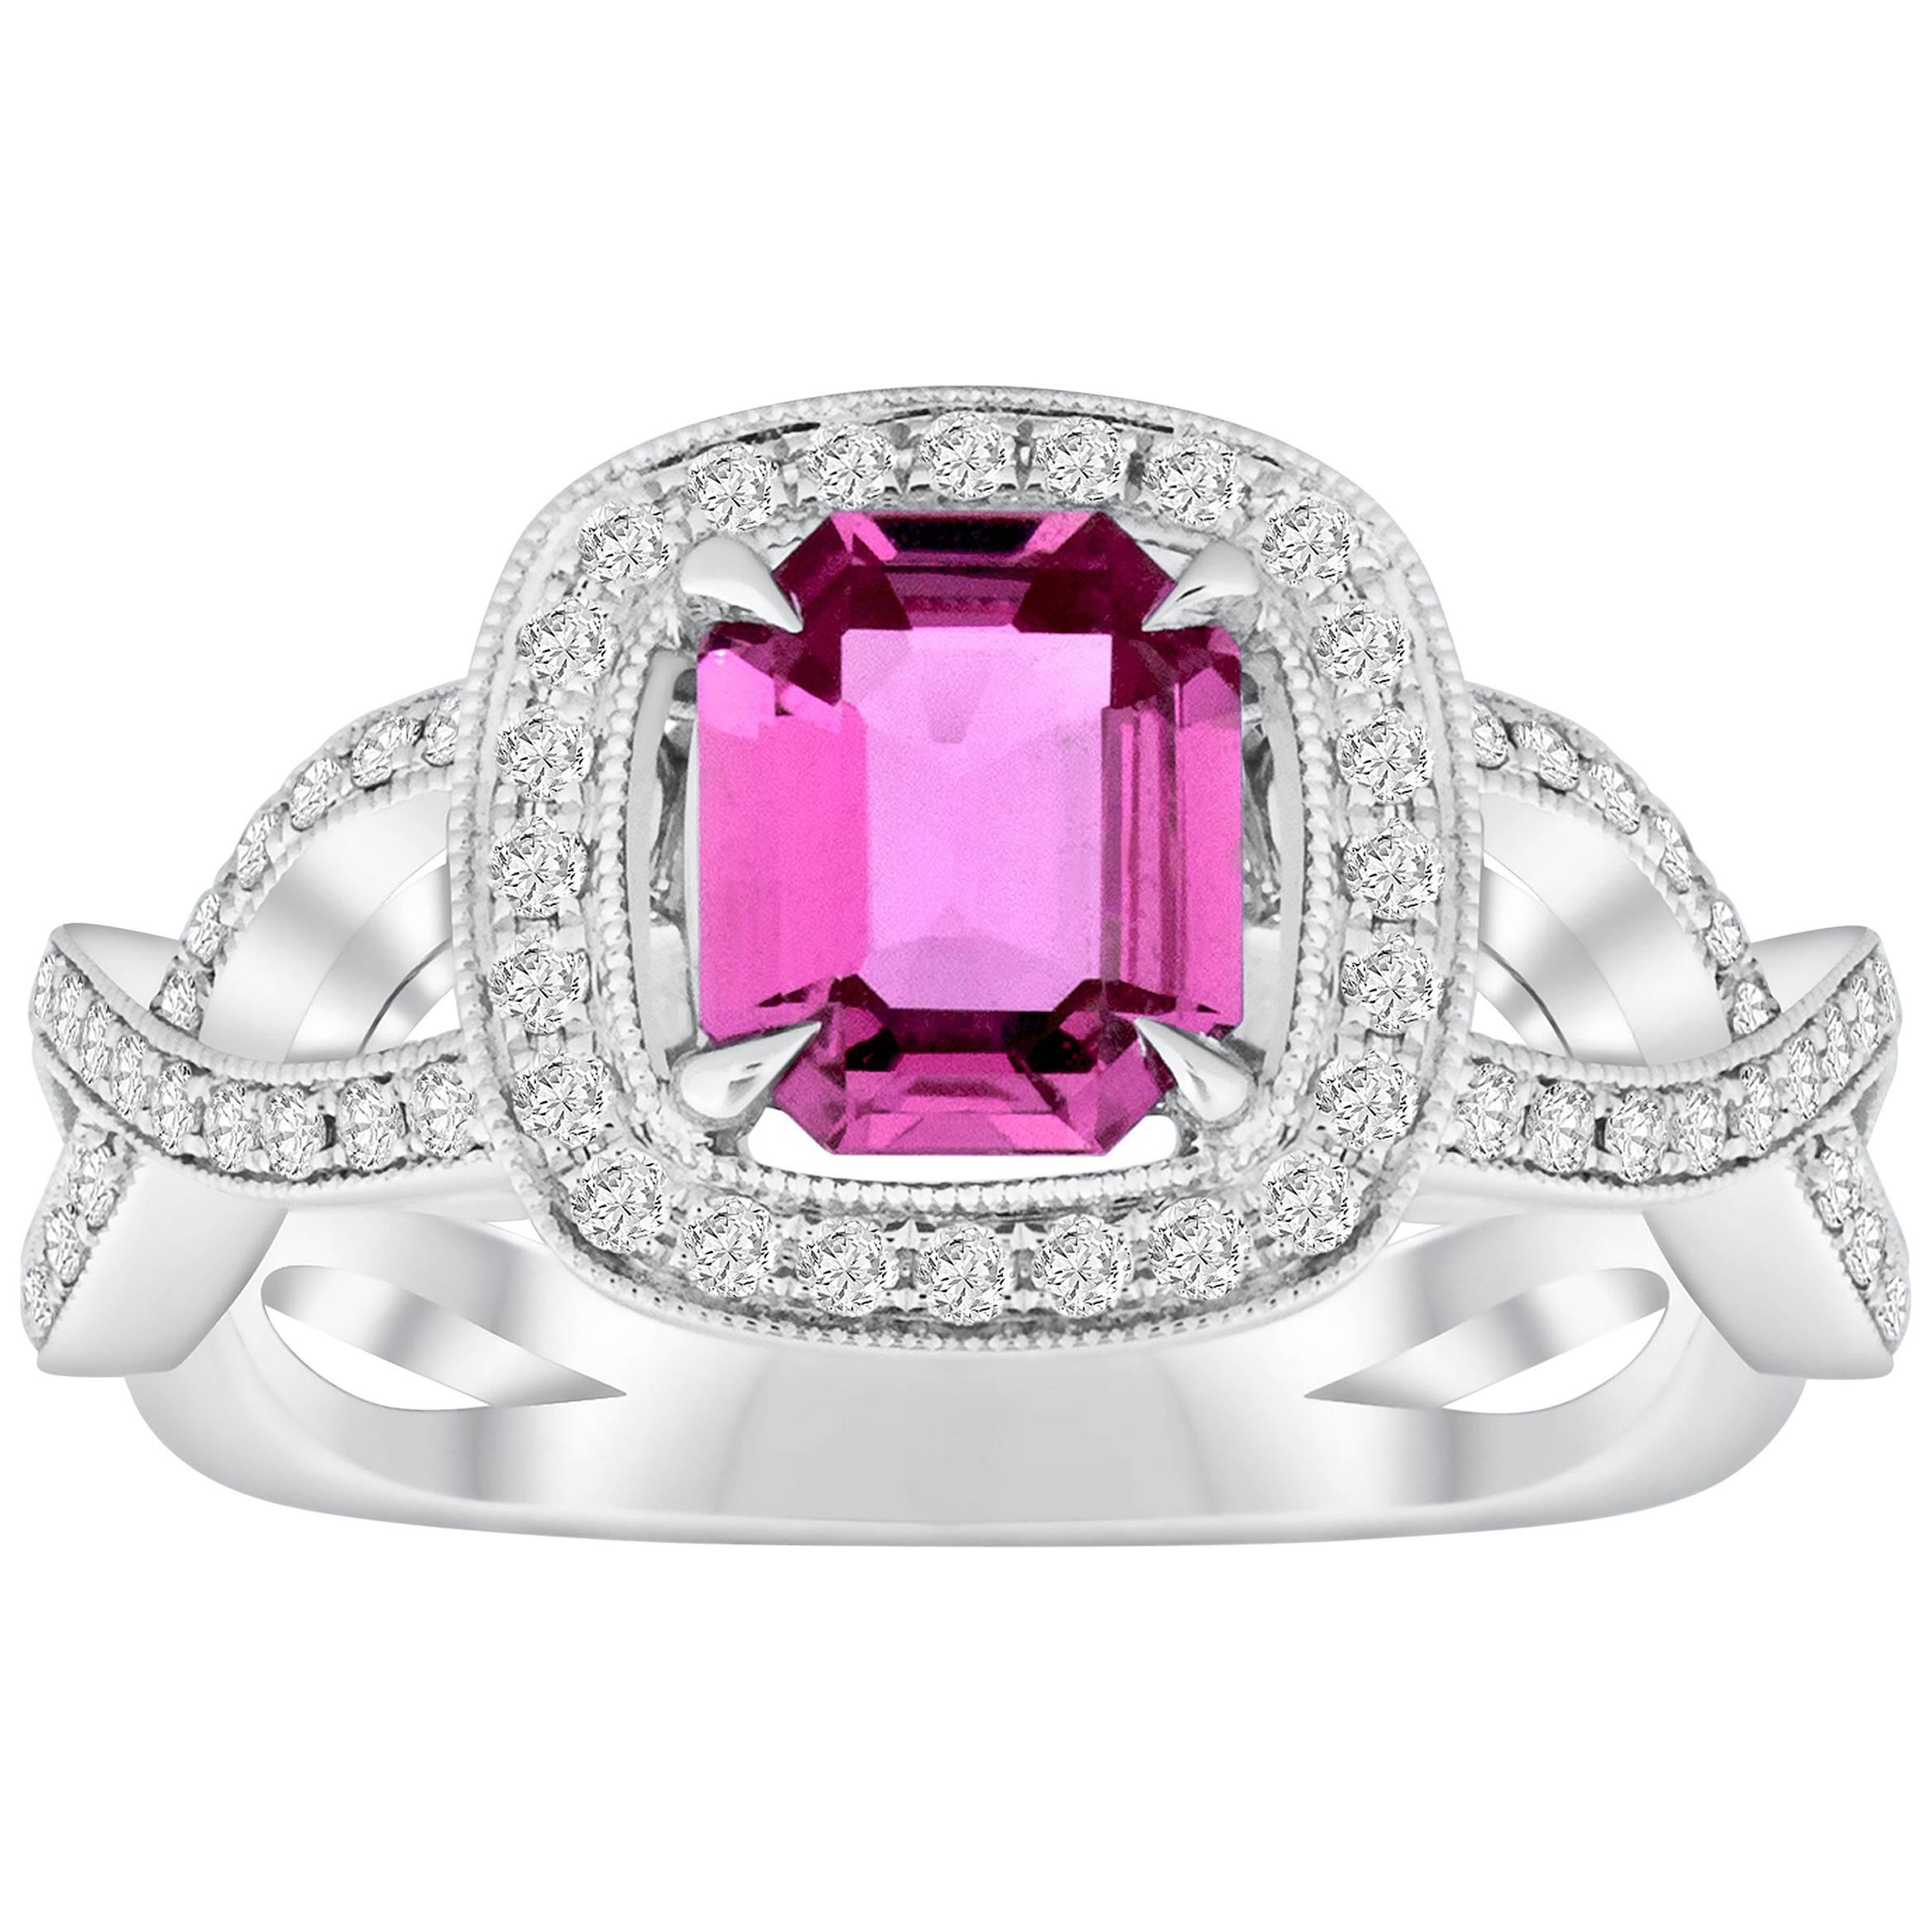 Roman Malakov Bague de fiançailles avec halo de saphirs roses taille émeraude et diamants de 1,12 carat